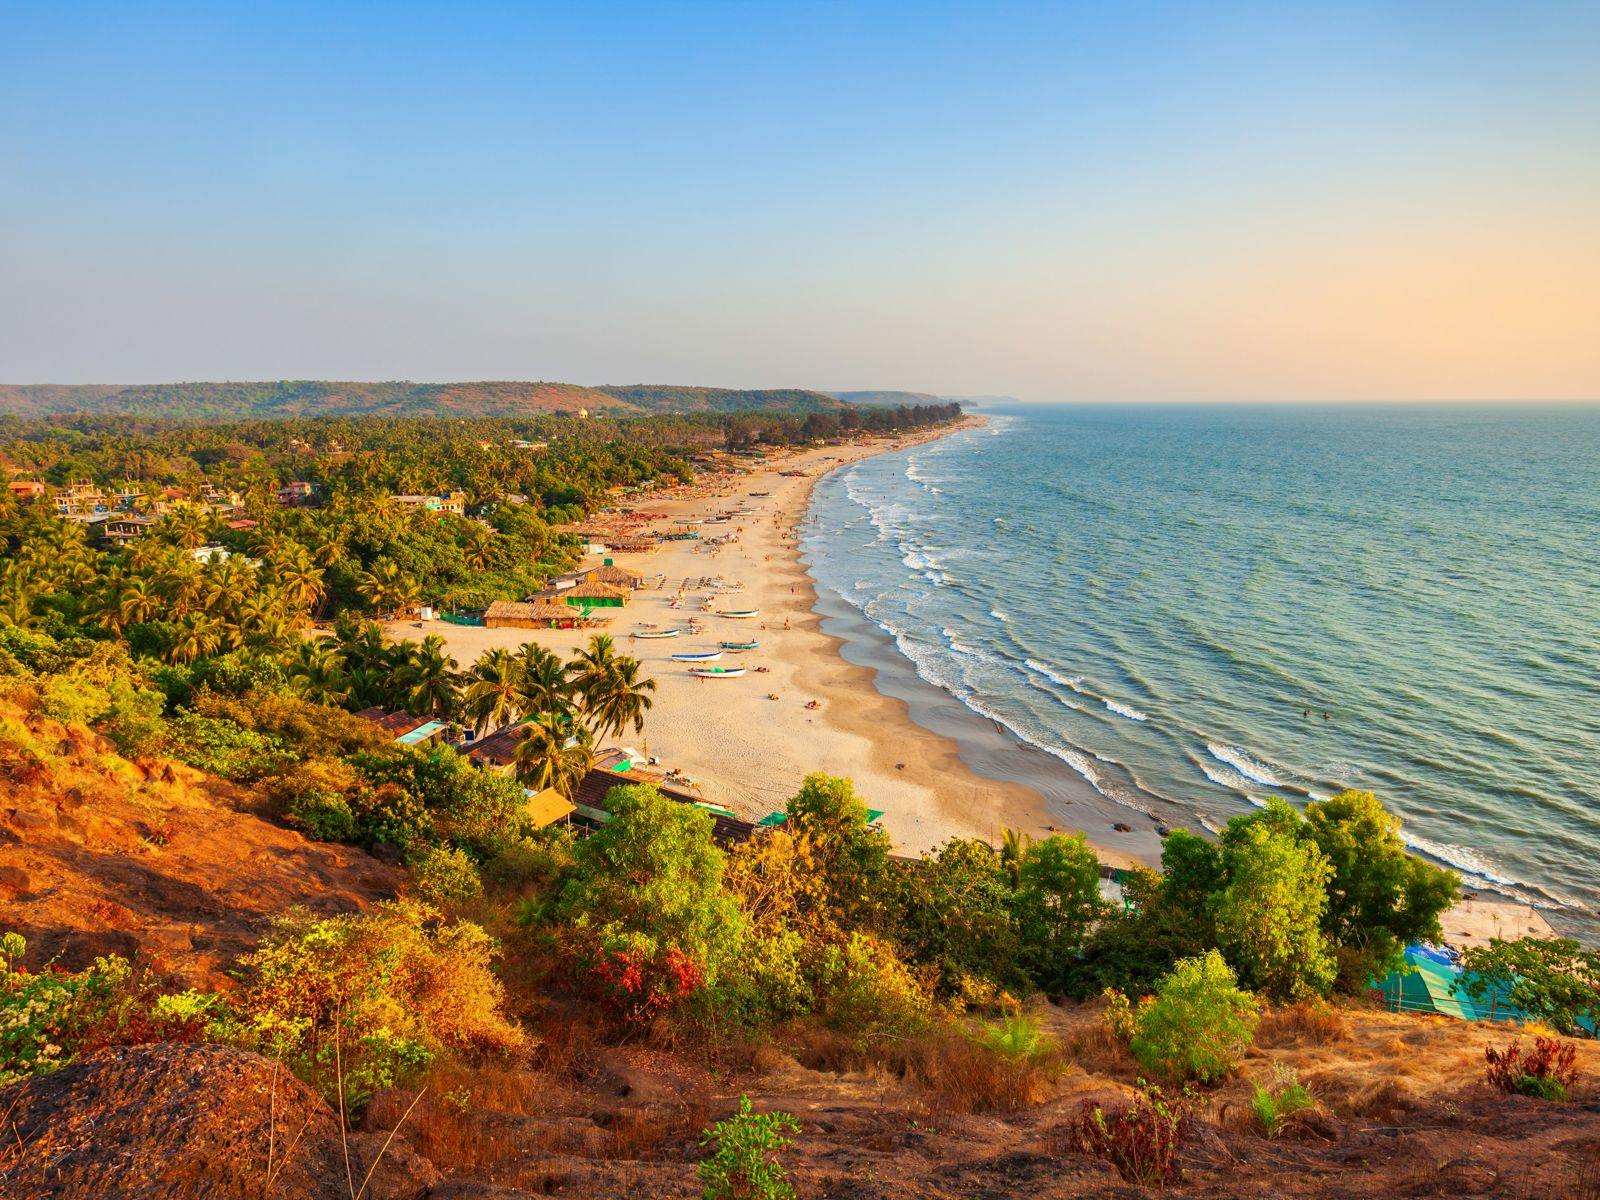 Resa till Goa - Panoramavy över en tropisk strand med böjda kokospalmer och färgglada båtar längs vattenlinjen vid solnedgången.